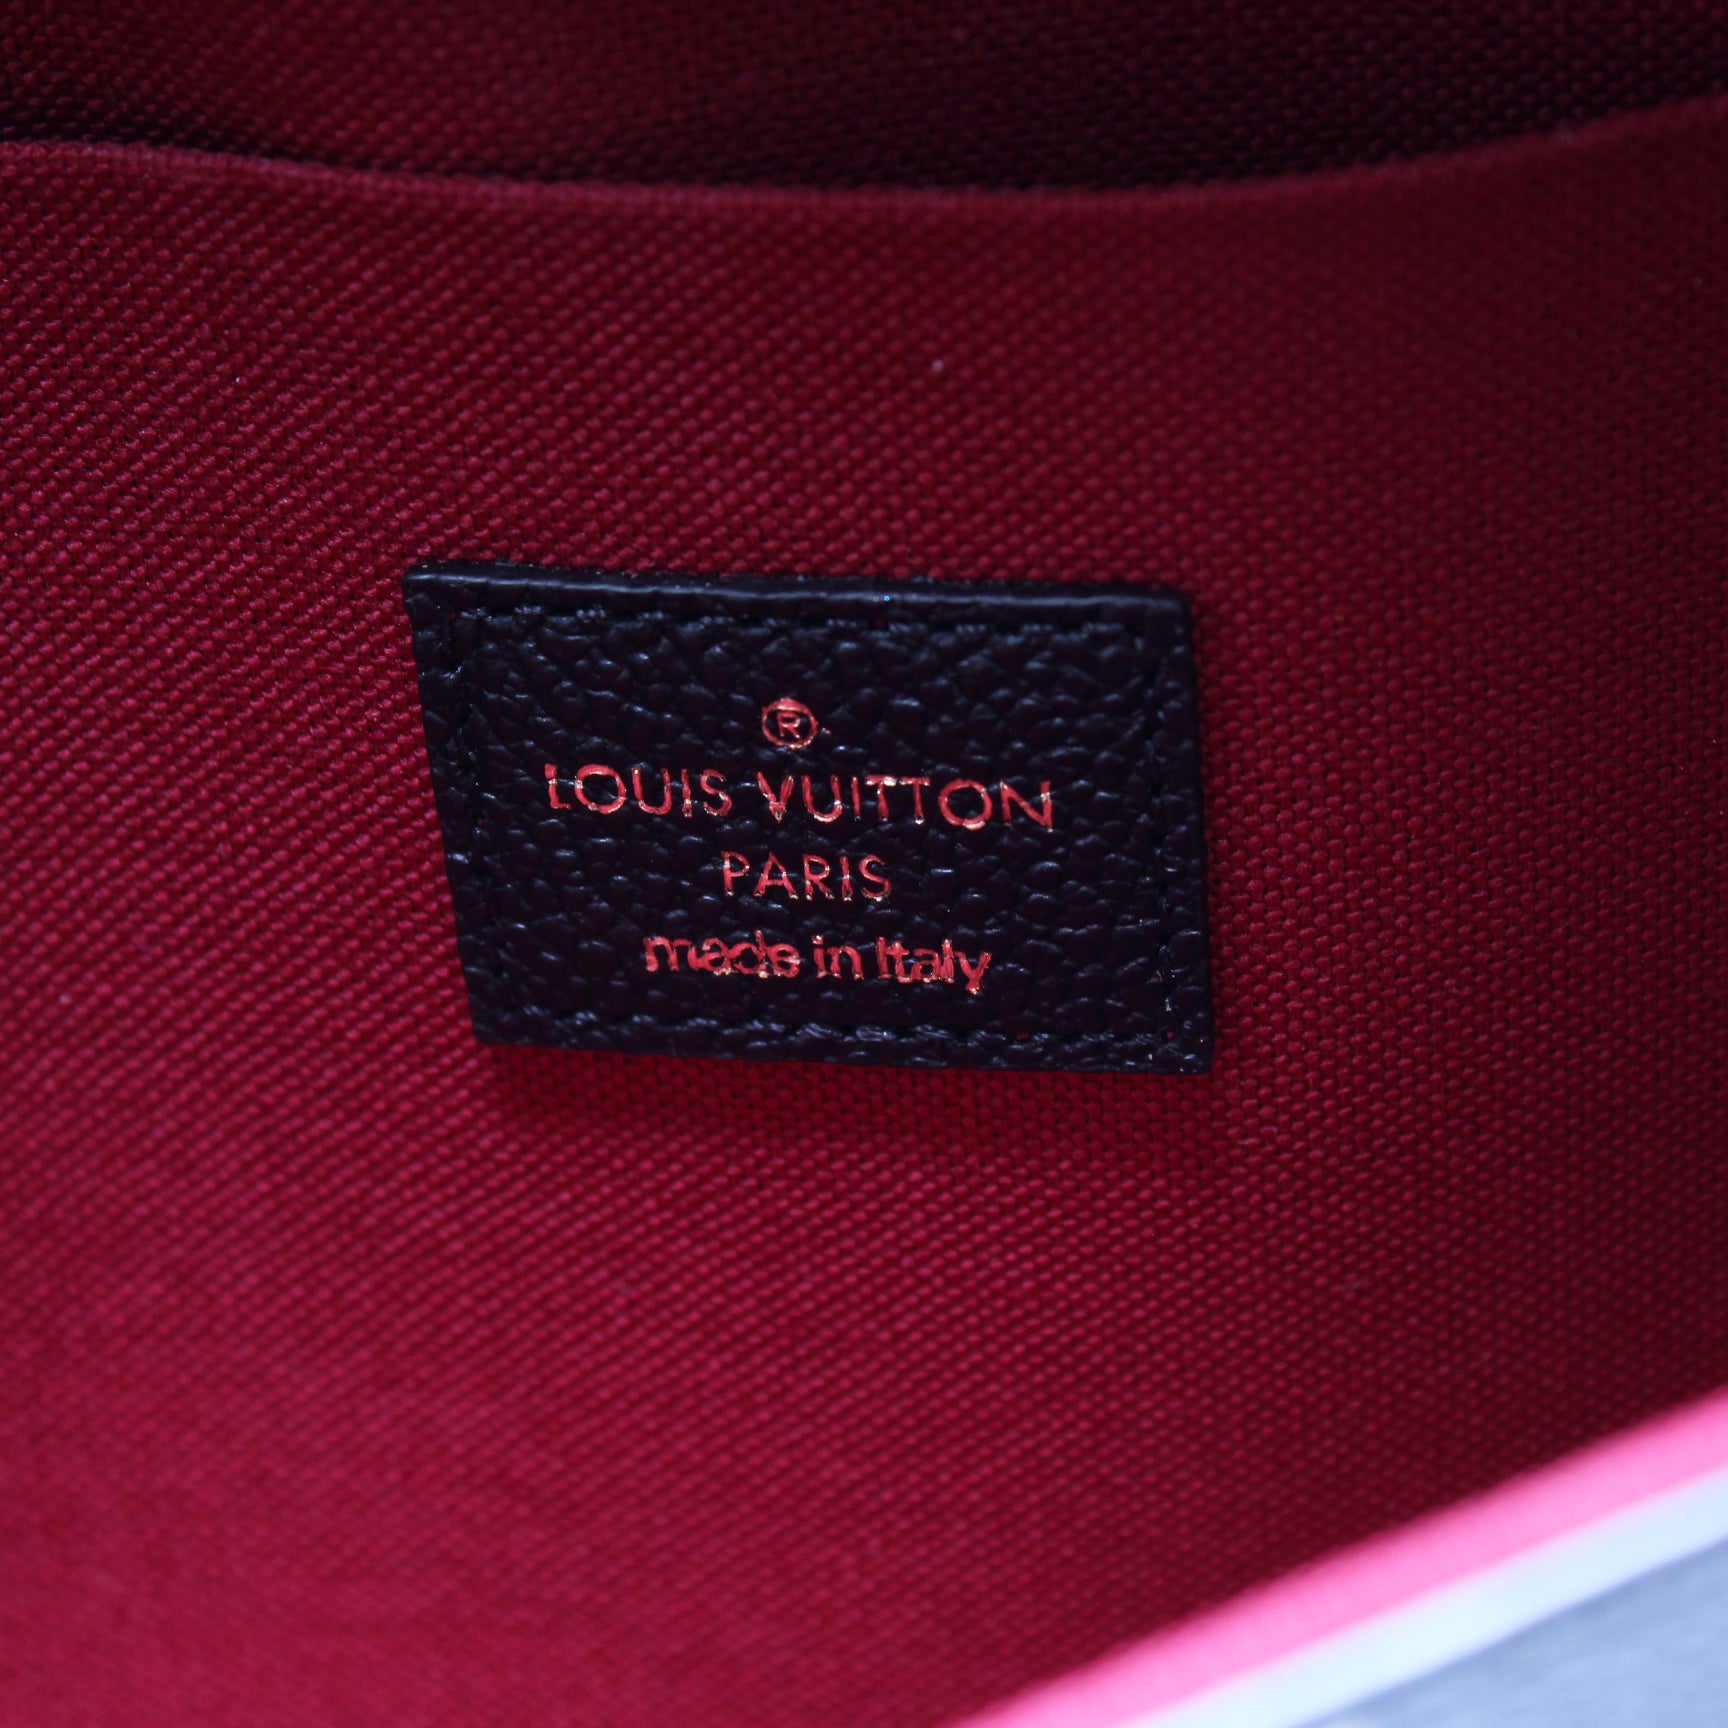 Louis Vuitton Félicie Pochette Bicolor Monogram Empriente Black/Beige